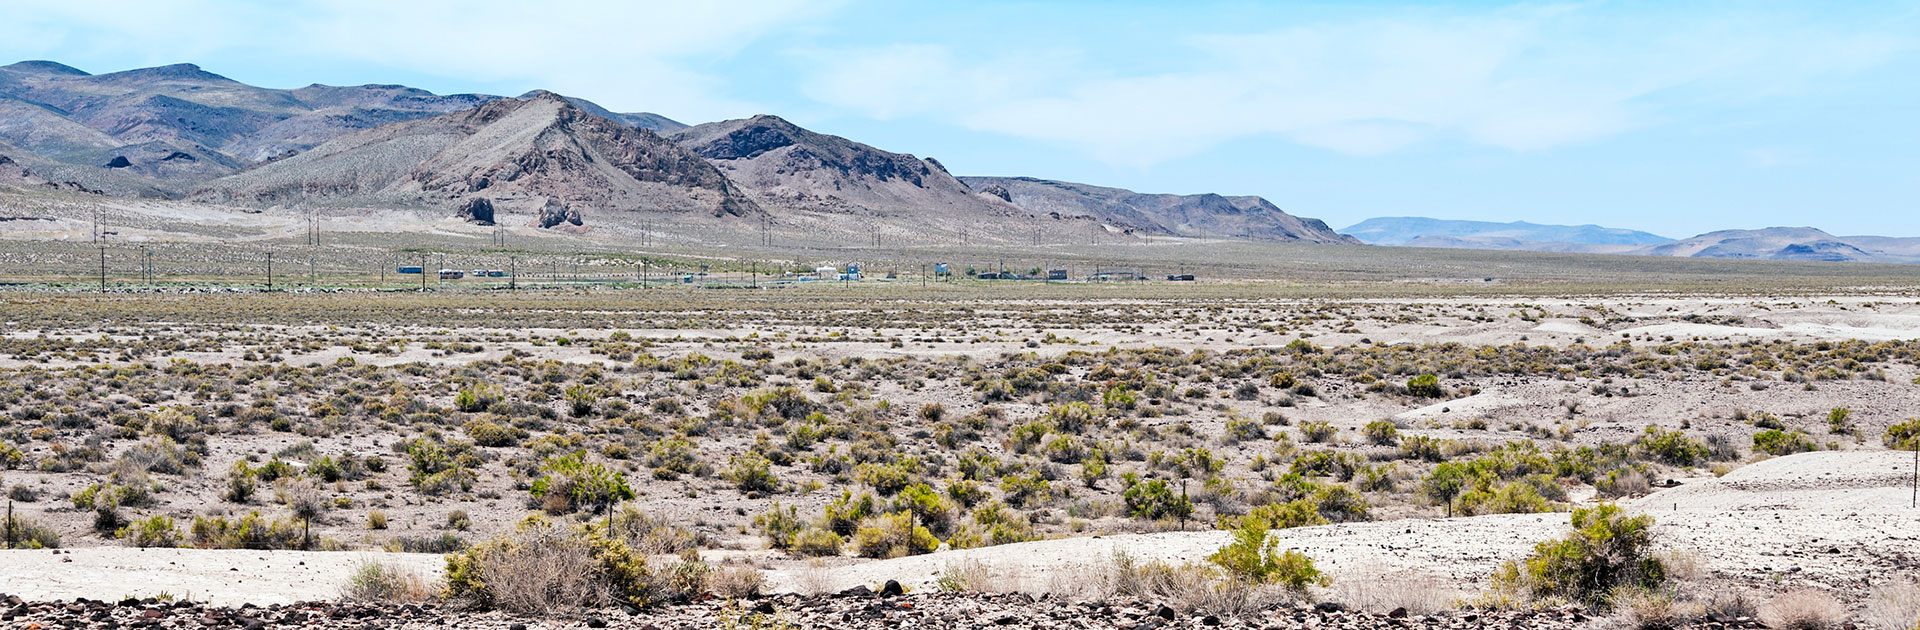 Fallon Nevada desert